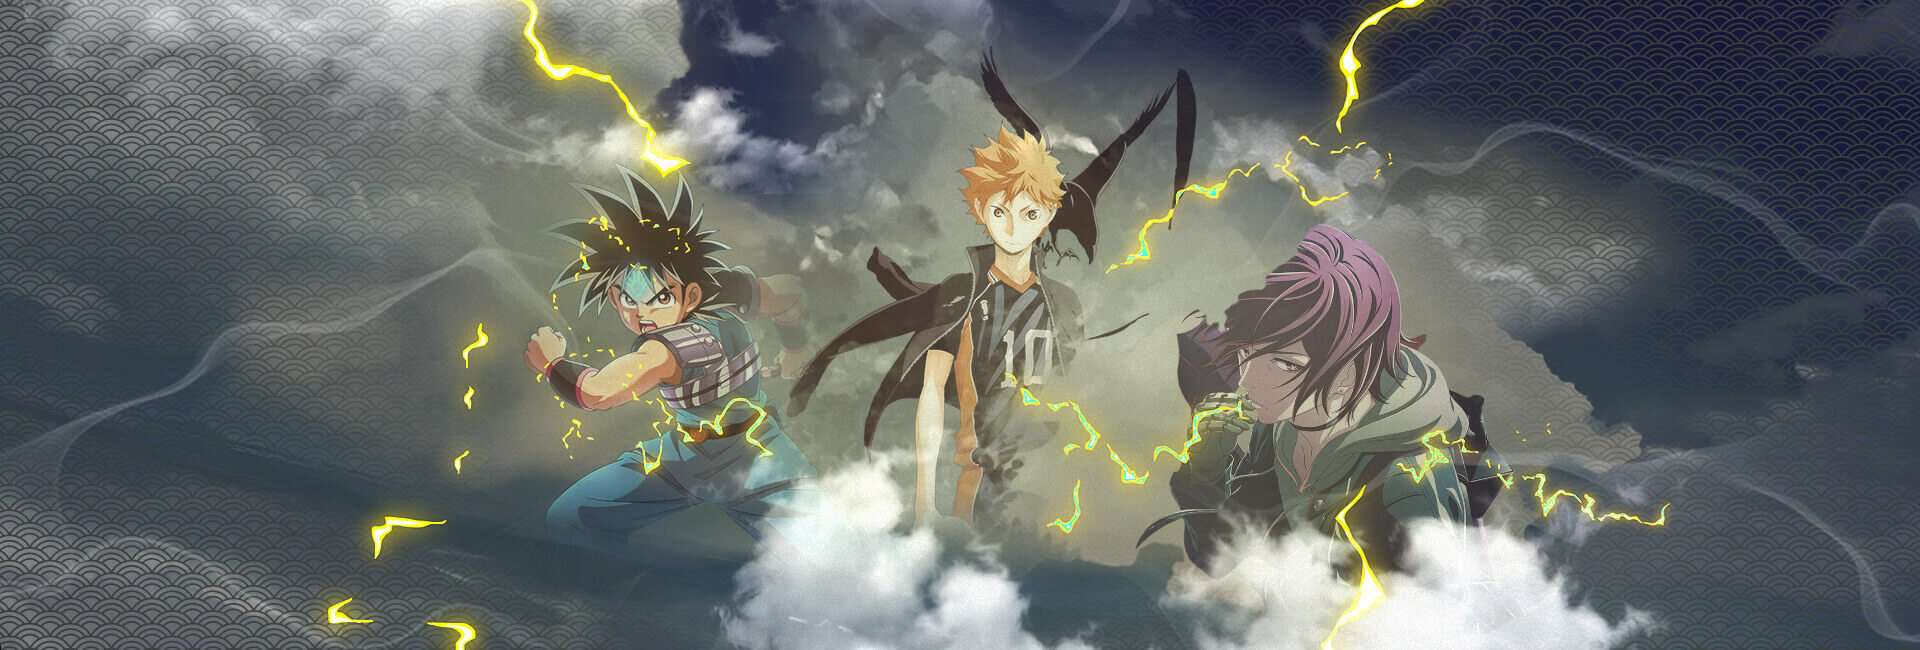 animes da temporada de outubro 2020 em destaque - Haikyuu, dragon quest e akudama drive